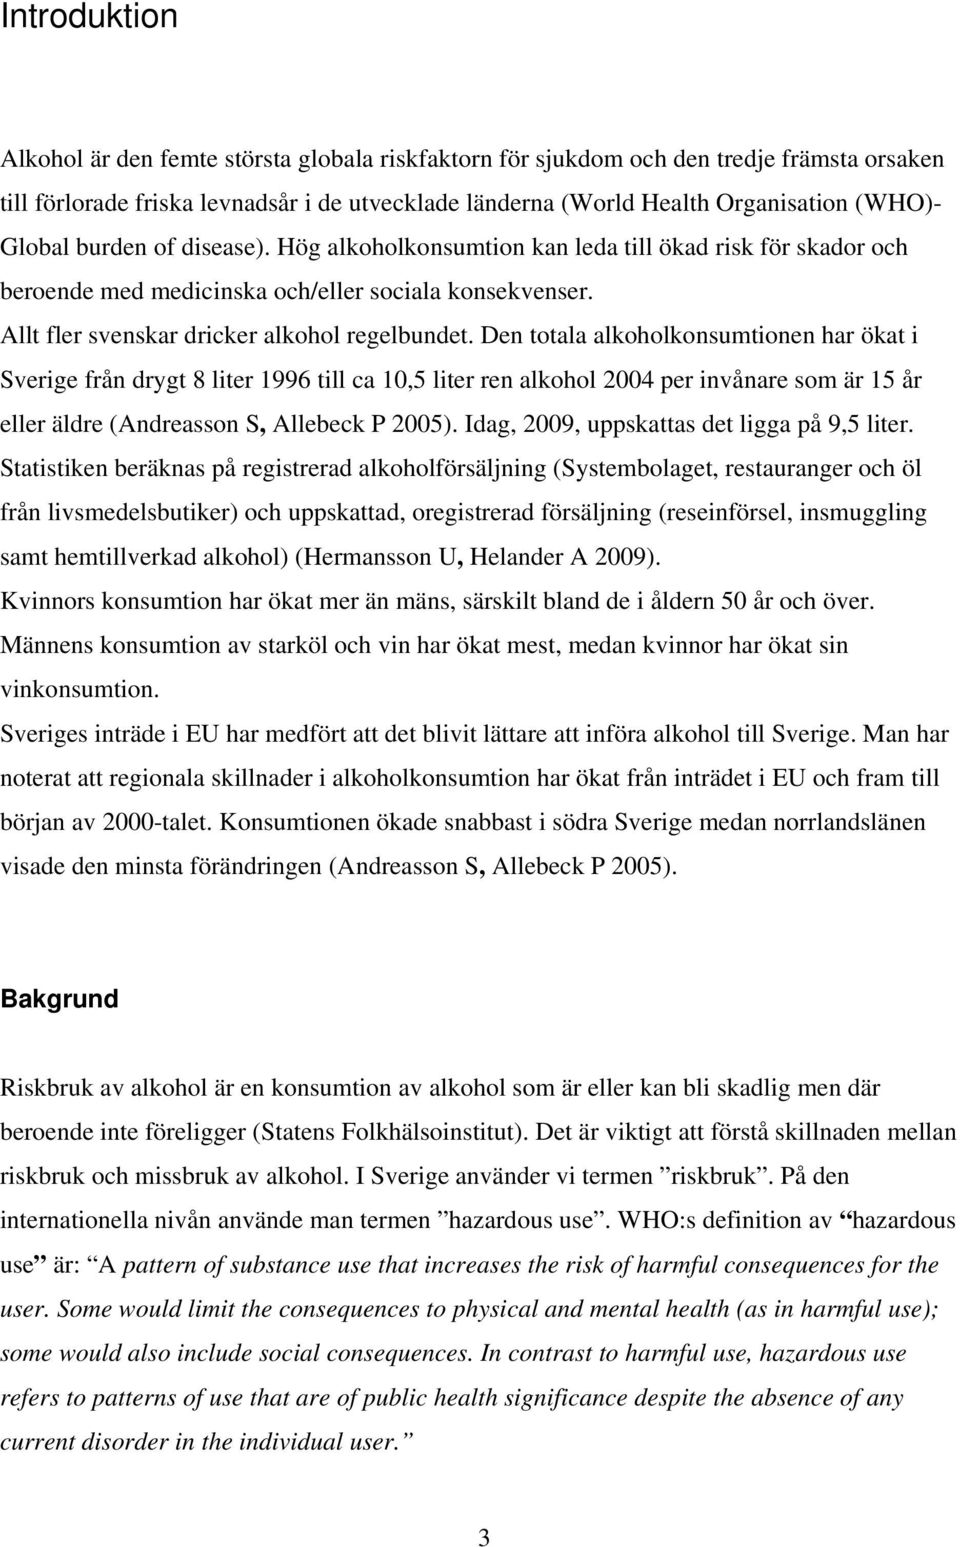 Den totala alkoholkonsumtionen har ökat i Sverige från drygt 8 liter 1996 till ca 10,5 liter ren alkohol 2004 per invånare som är 15 år eller äldre (Andreasson S, Allebeck P 2005).